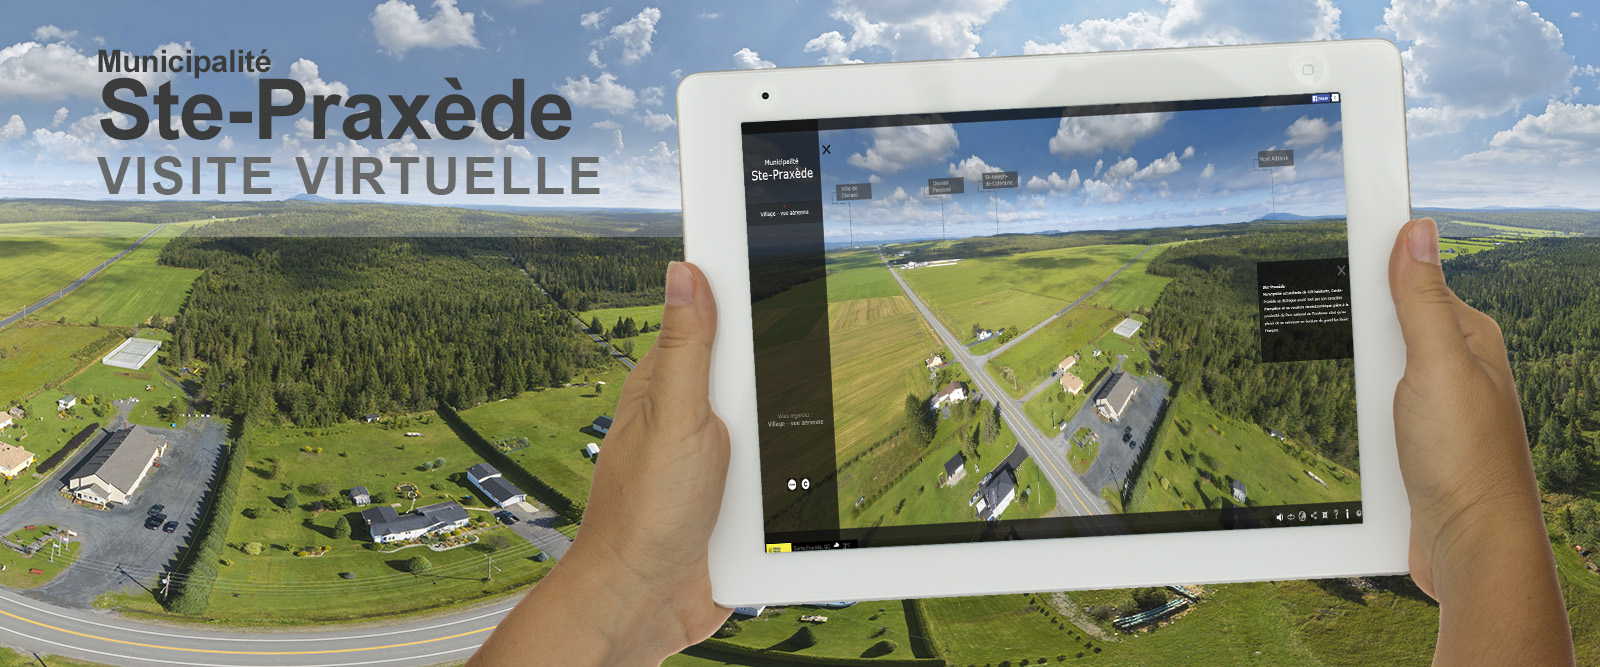 Visite virtuelle 360 degrés Ste-Praxède